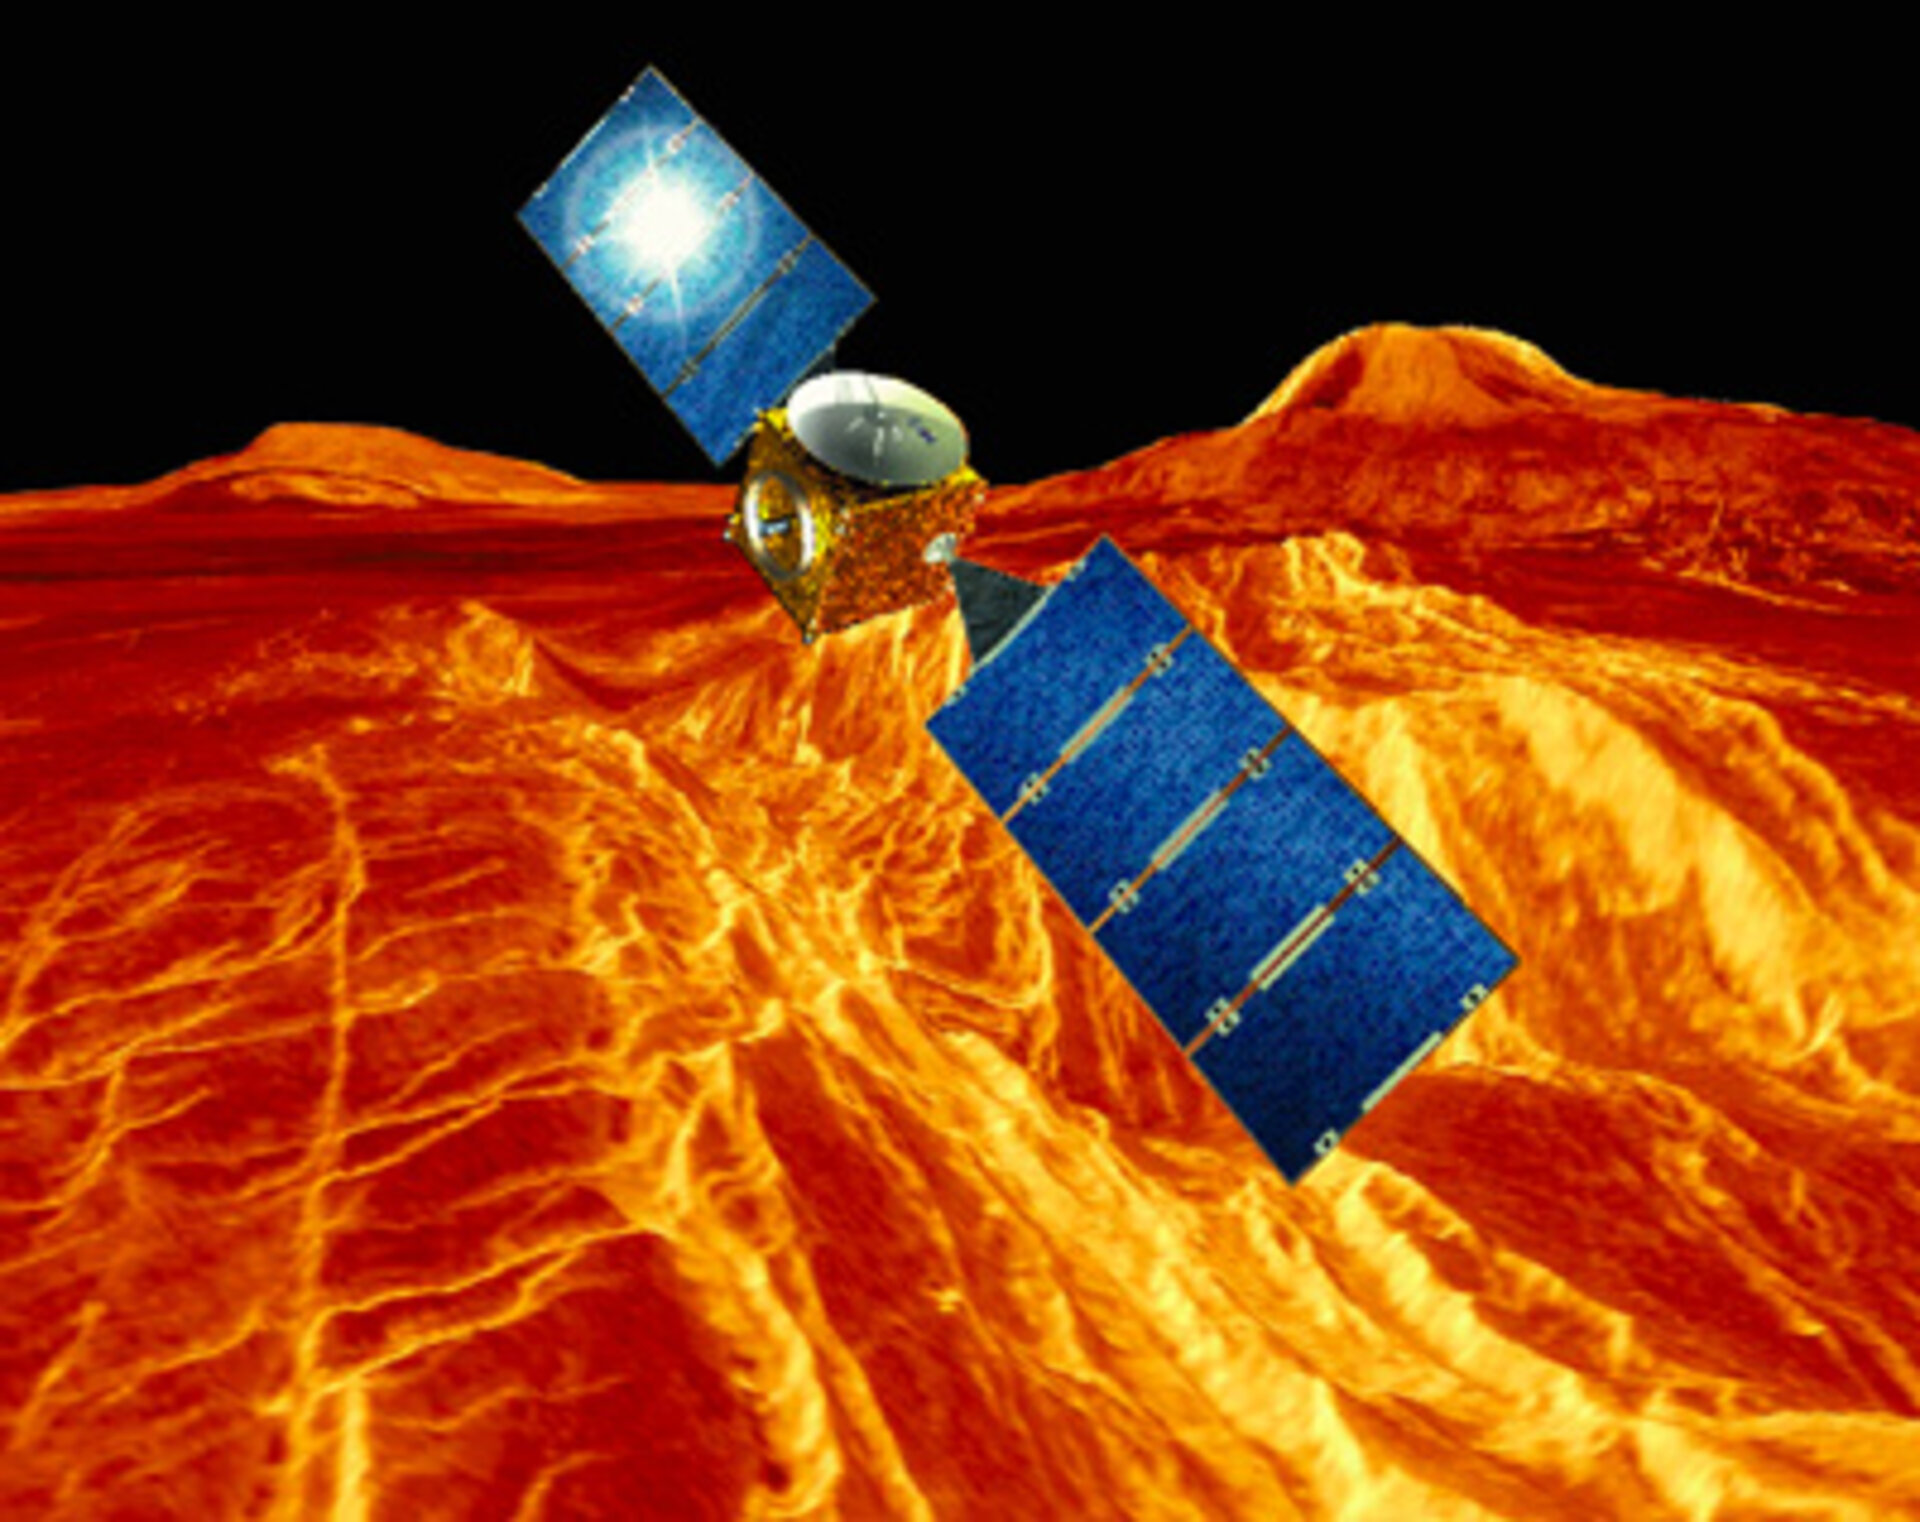 Venus Express zal onze buurplaneet uitgebreid bestuderen